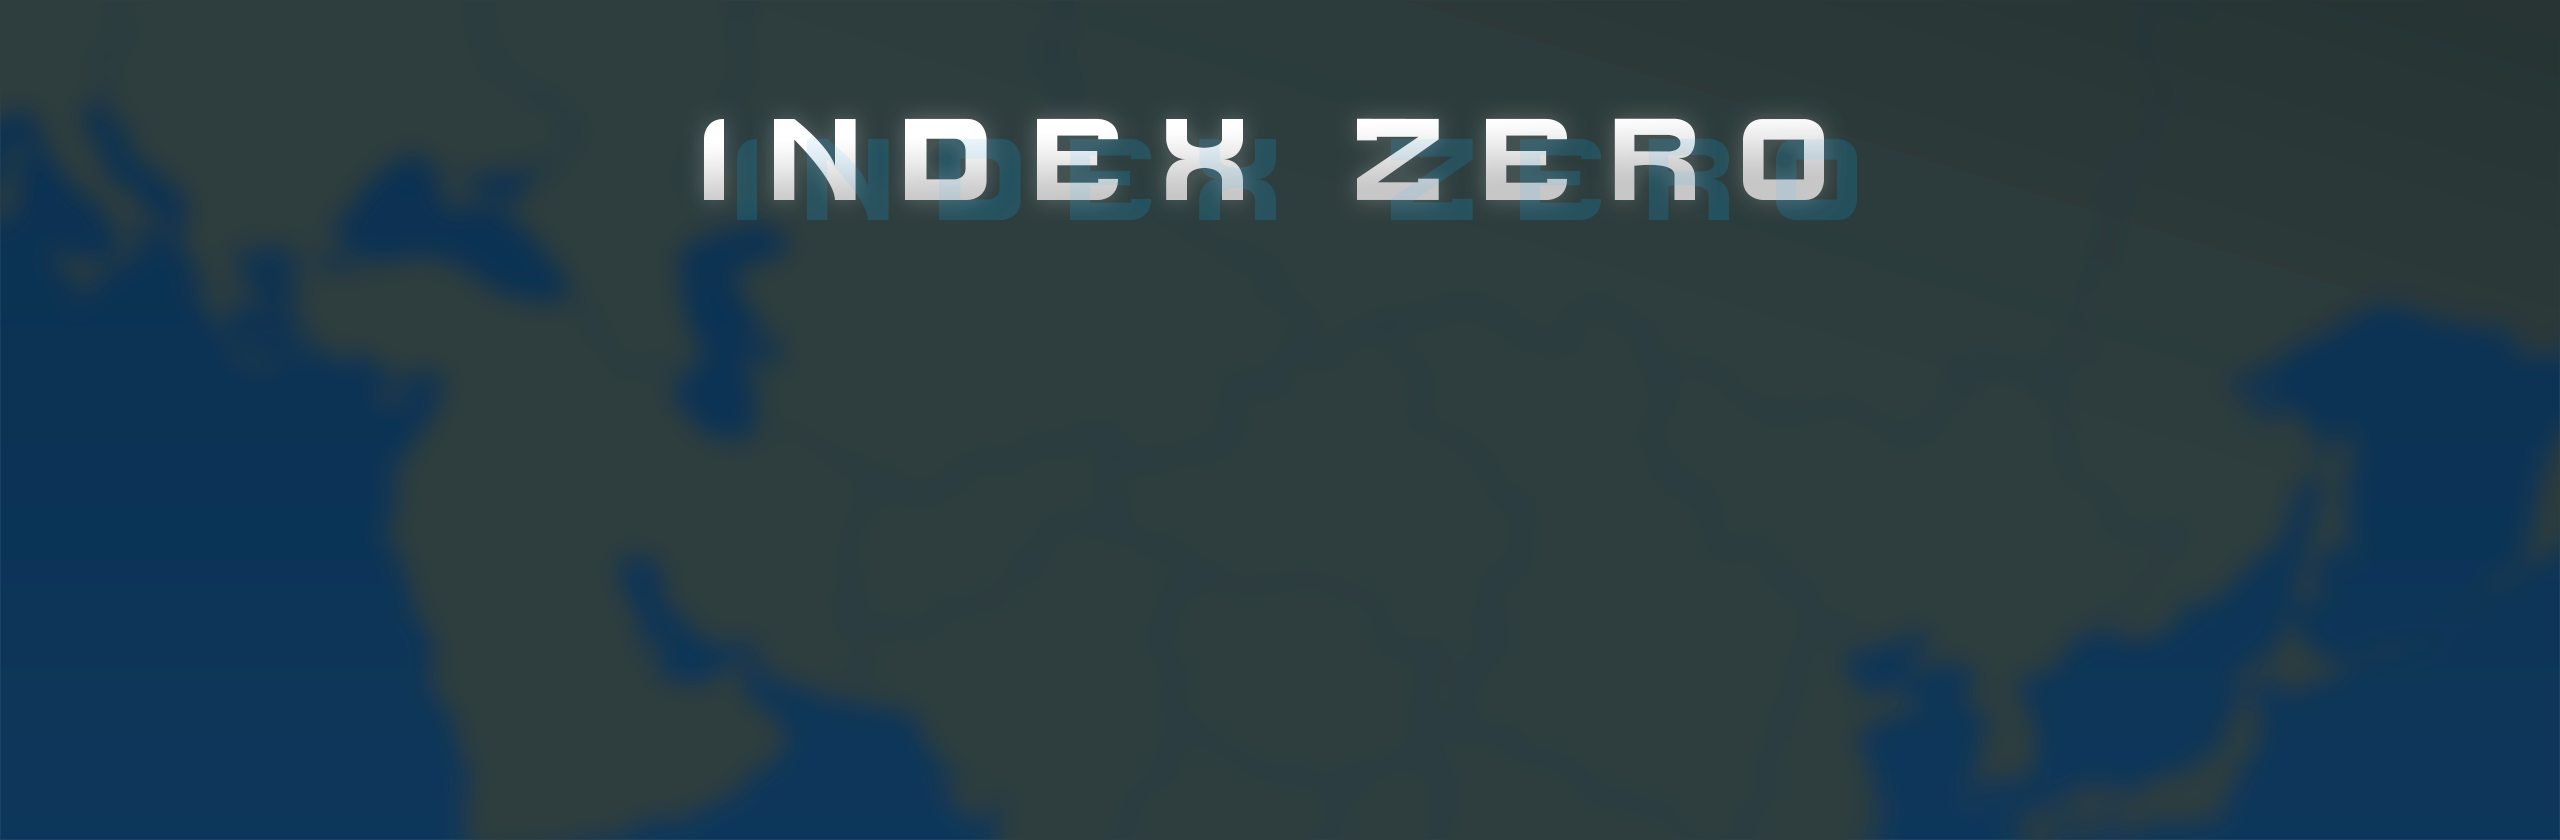 Index ZERO